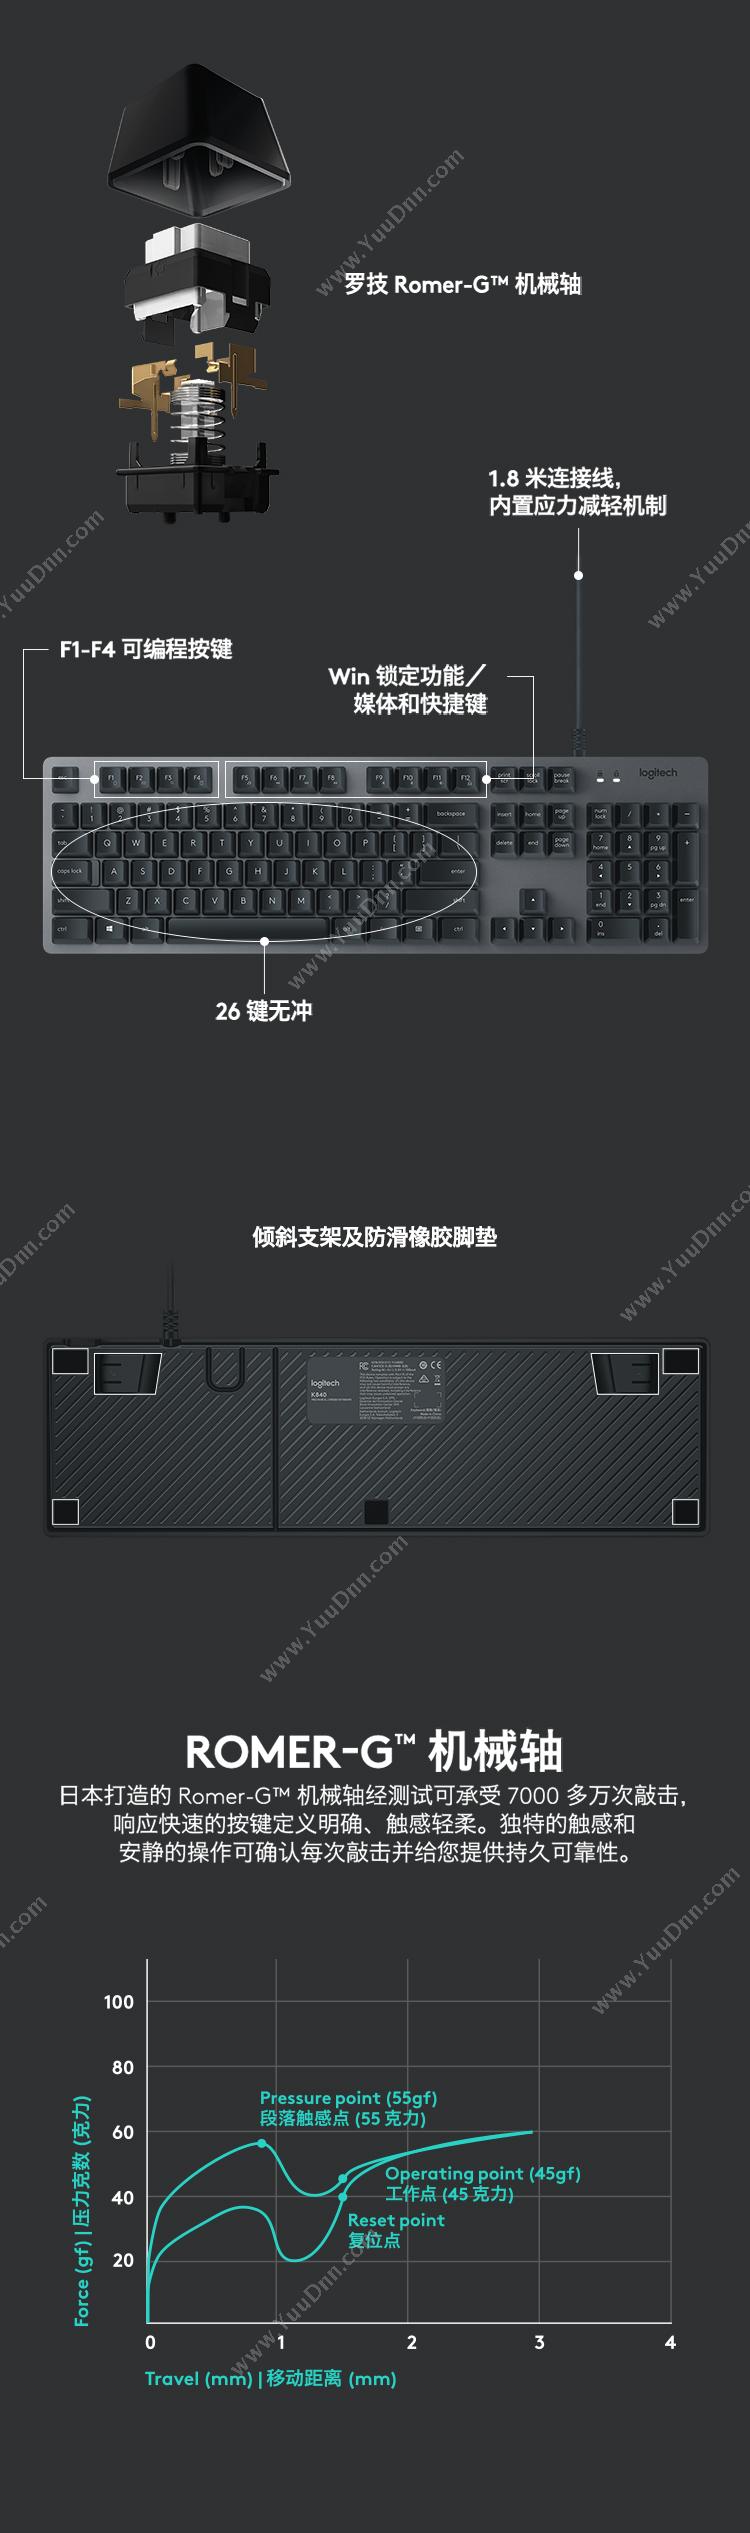 罗技 Logitech K840 机械键盘 （黑） 有线键盘